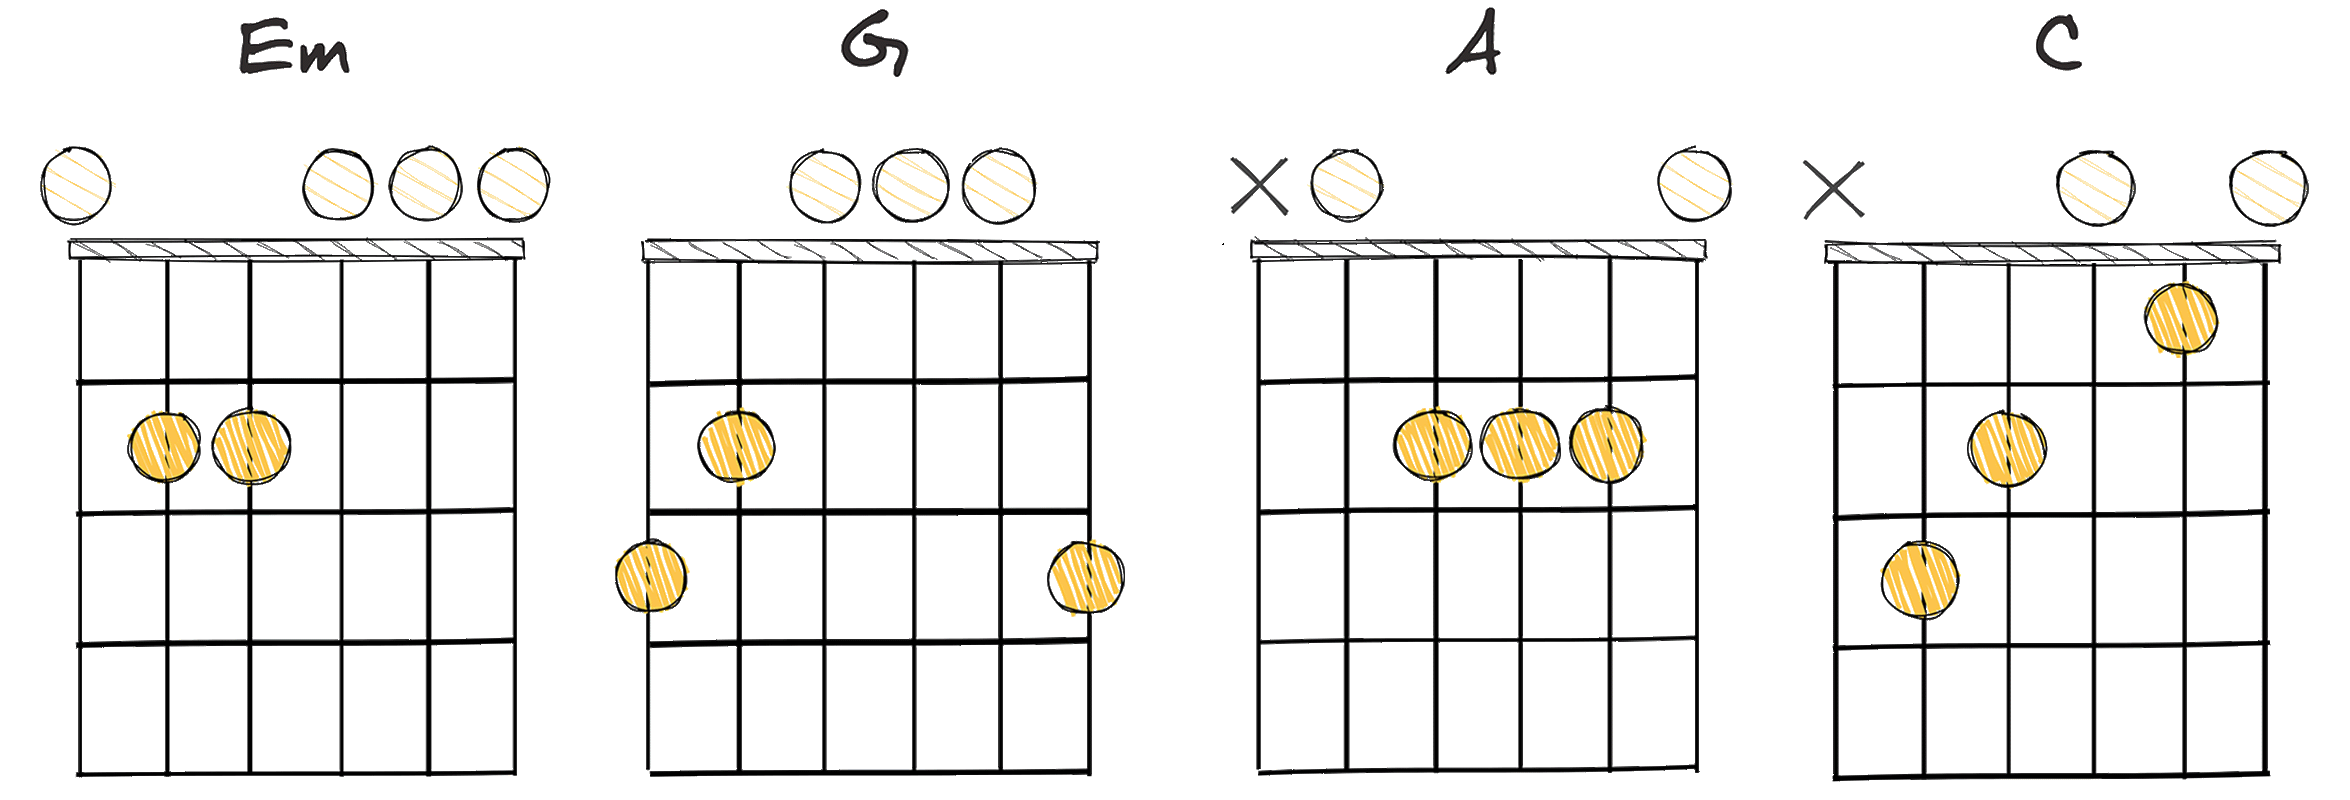 ii - IV - V - ♭VII (2-4-5-♭7) chords diagram